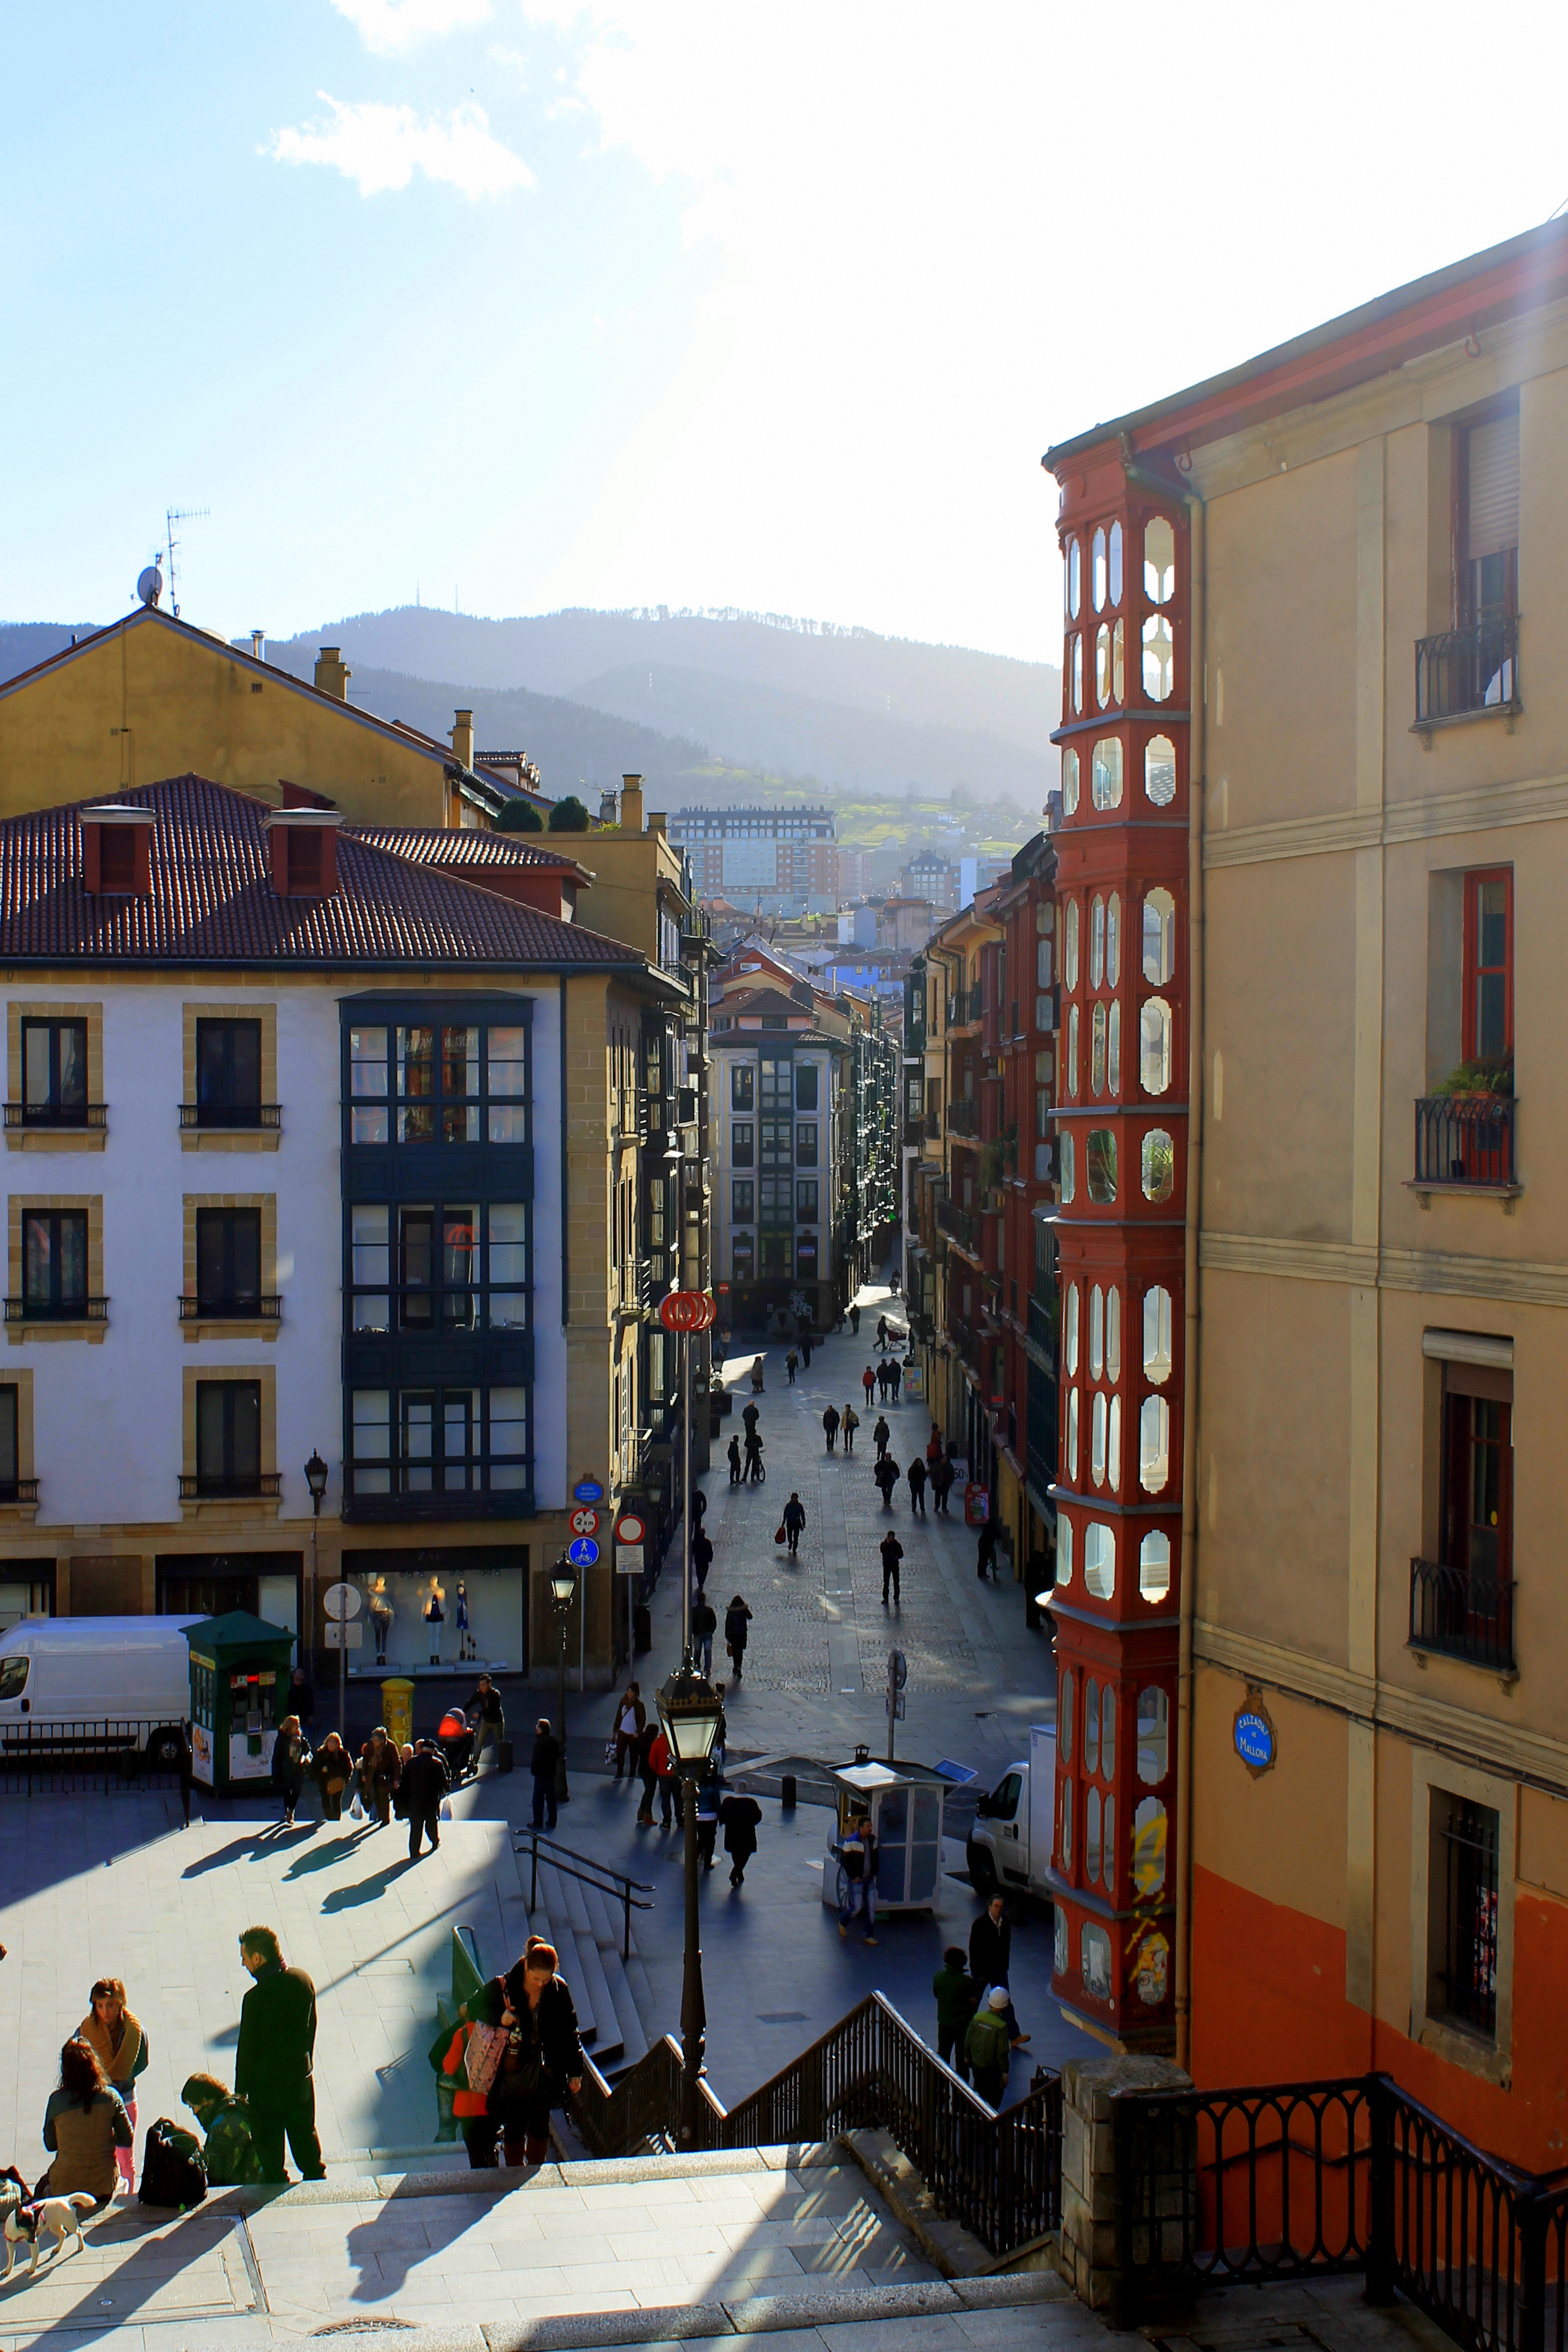  Casco Viejo – czyli stare miasto. Jak widać z każdego miejsca w Bilbao widać pobliskie wzgórza.